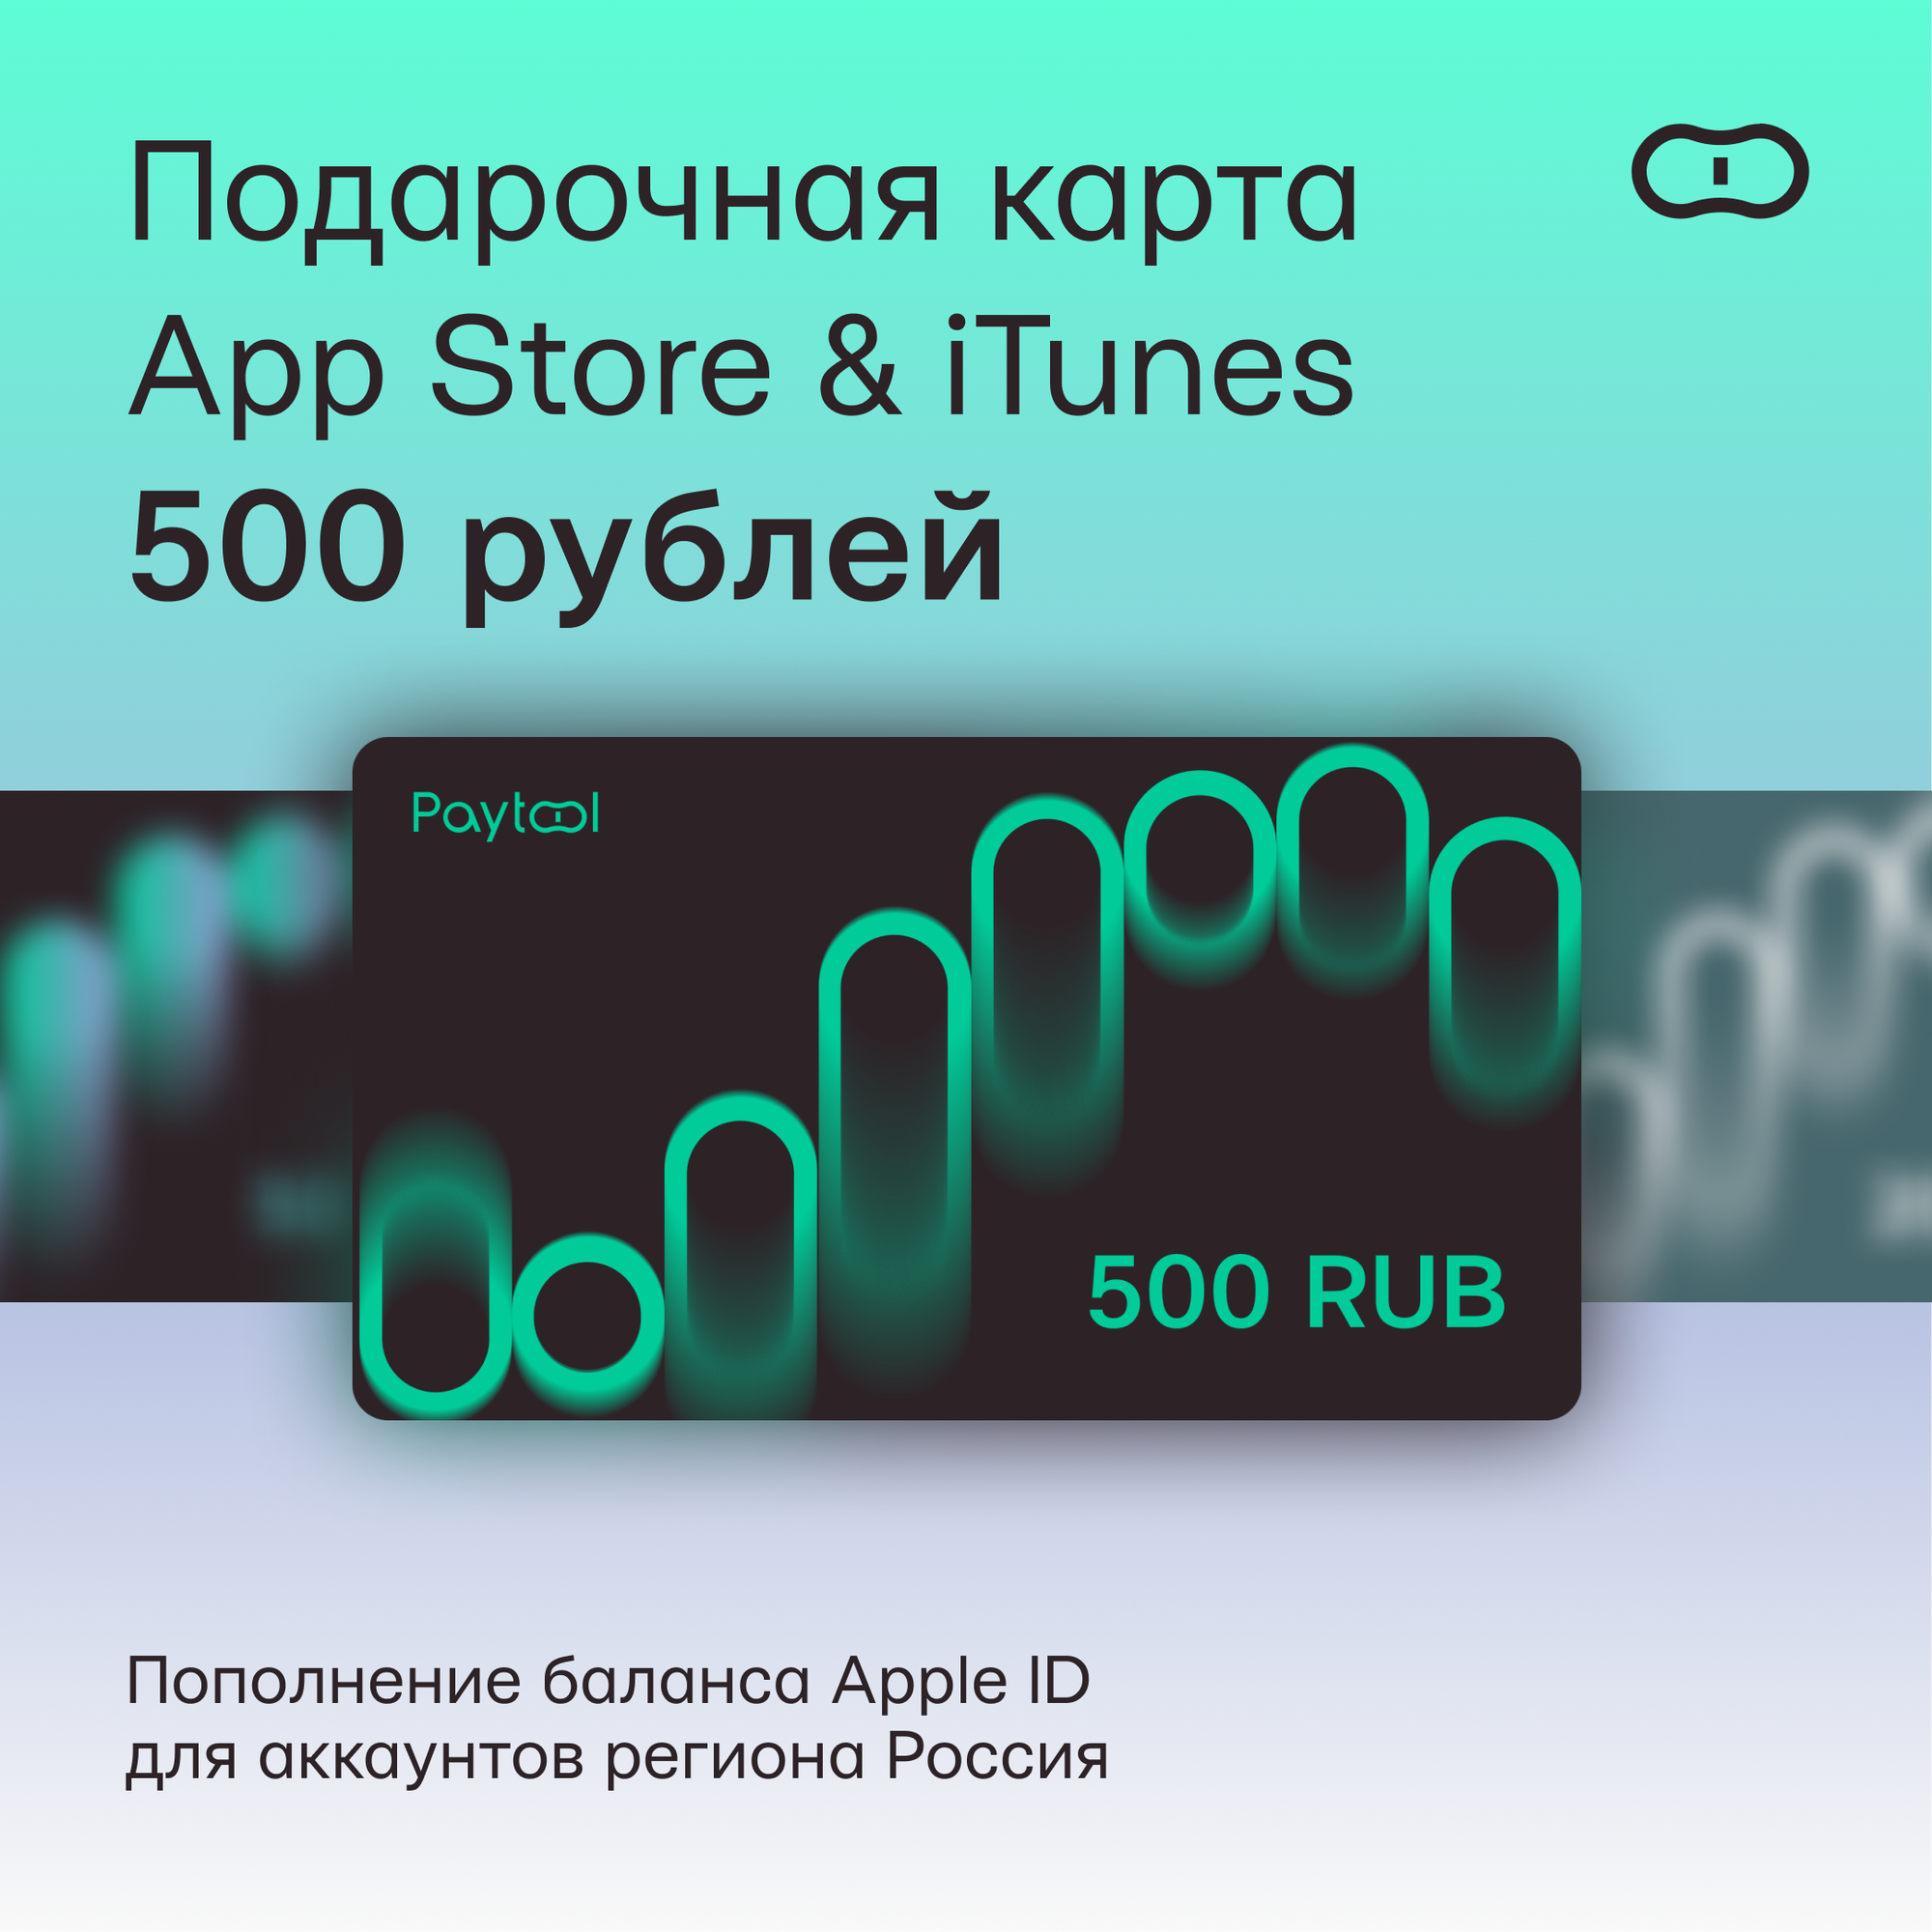 Подарочная карта/карта оплаты Apple (пополнение счёта на 1000 рублей App Store & iTunes) бессрочная активация